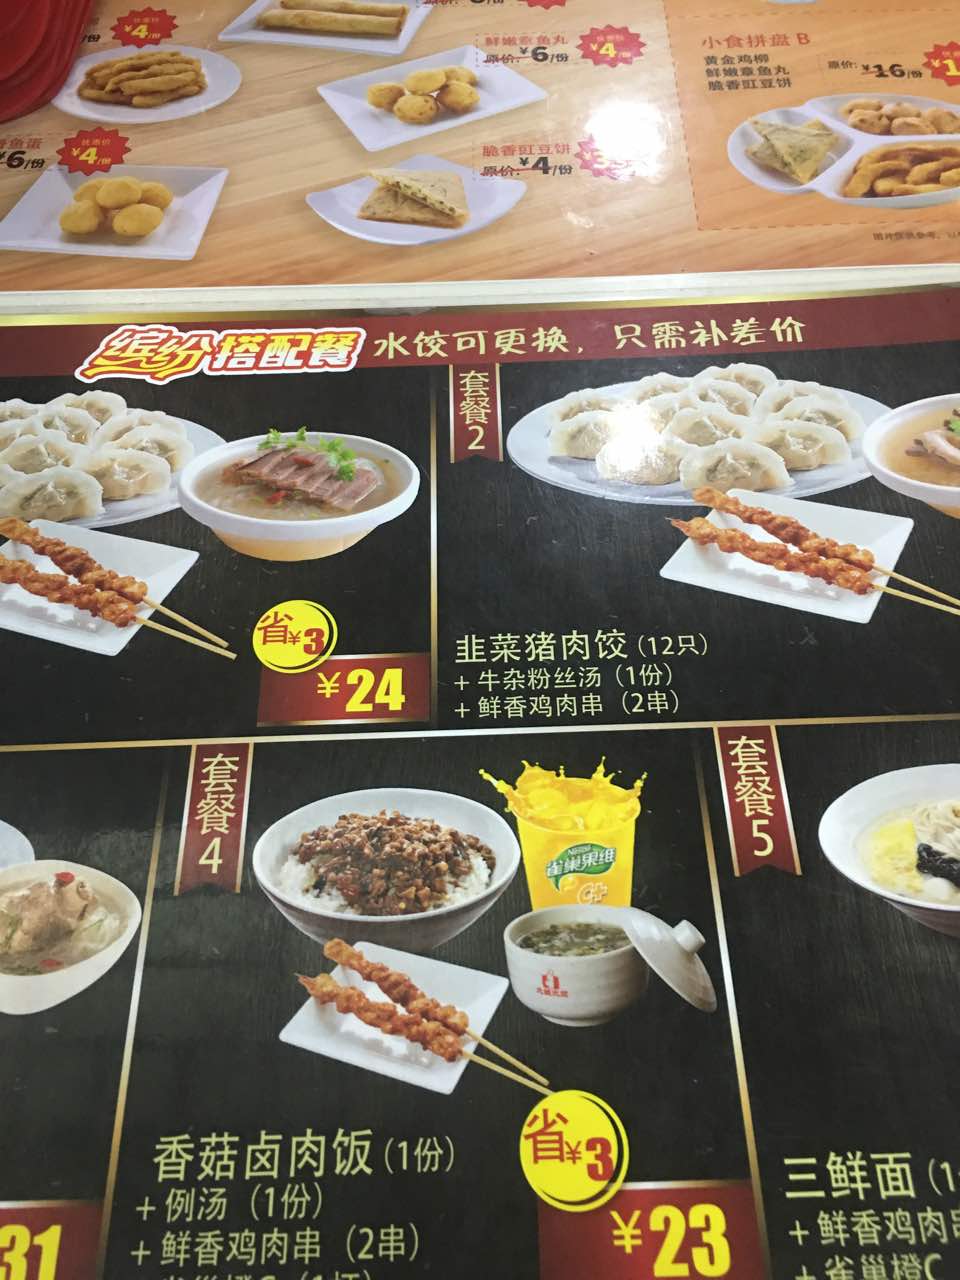 2022大娘水饺(人民中路端平桥店)美食餐厅,家门口的大娘水饺,习惯这的